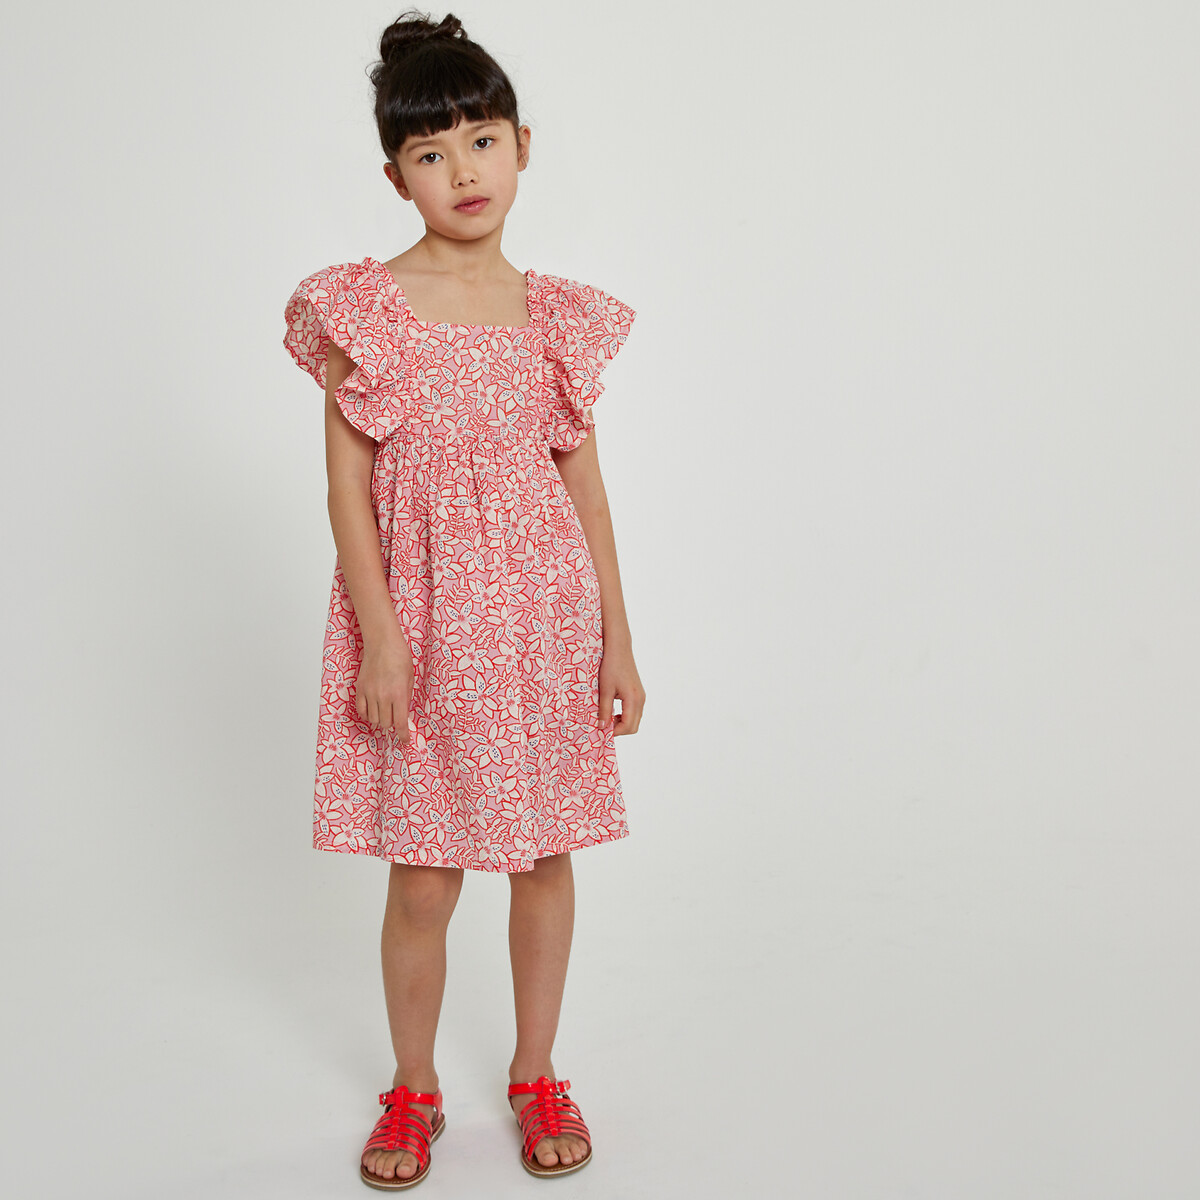 Платье из хлопка с цветочным принтом 10 лет - 138 см розовый